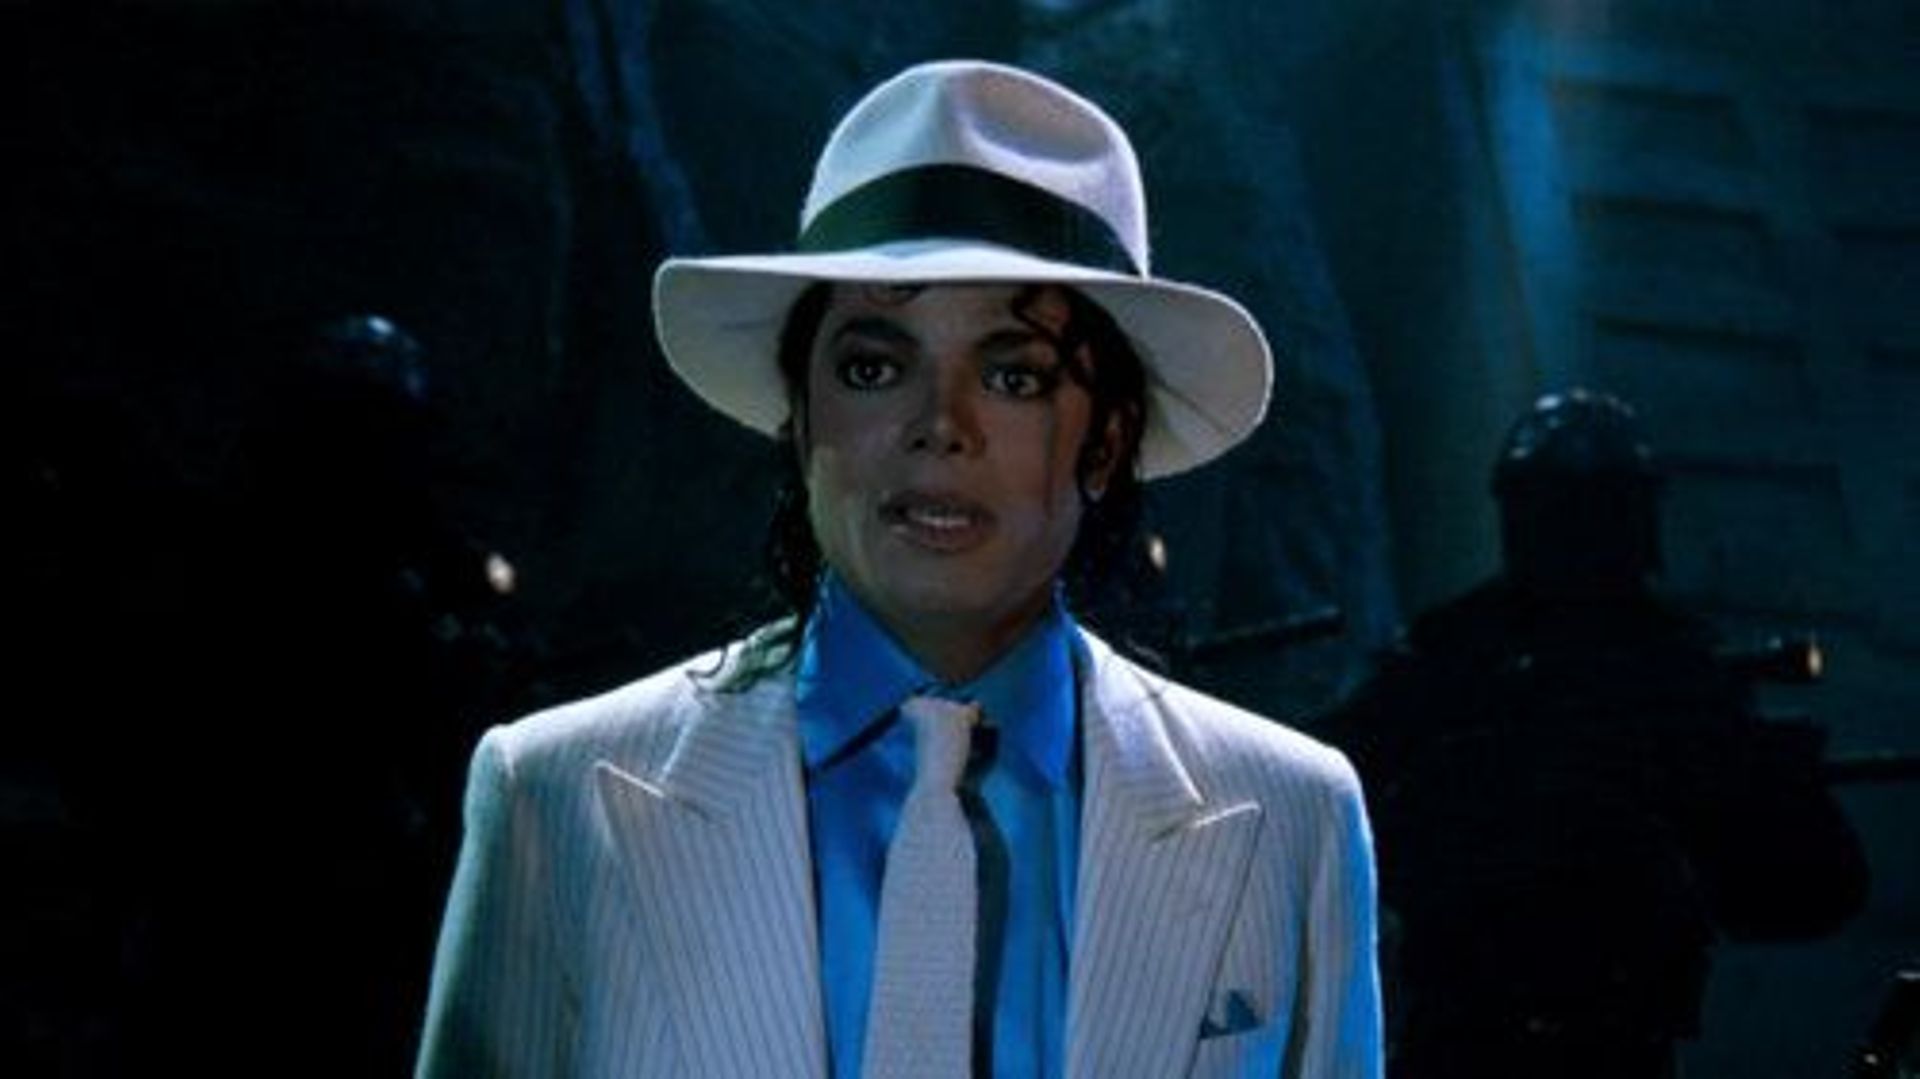 Un Belge achète pour 10 000 euros le chapeau de Michael Jackson dans "Smooth Criminal"